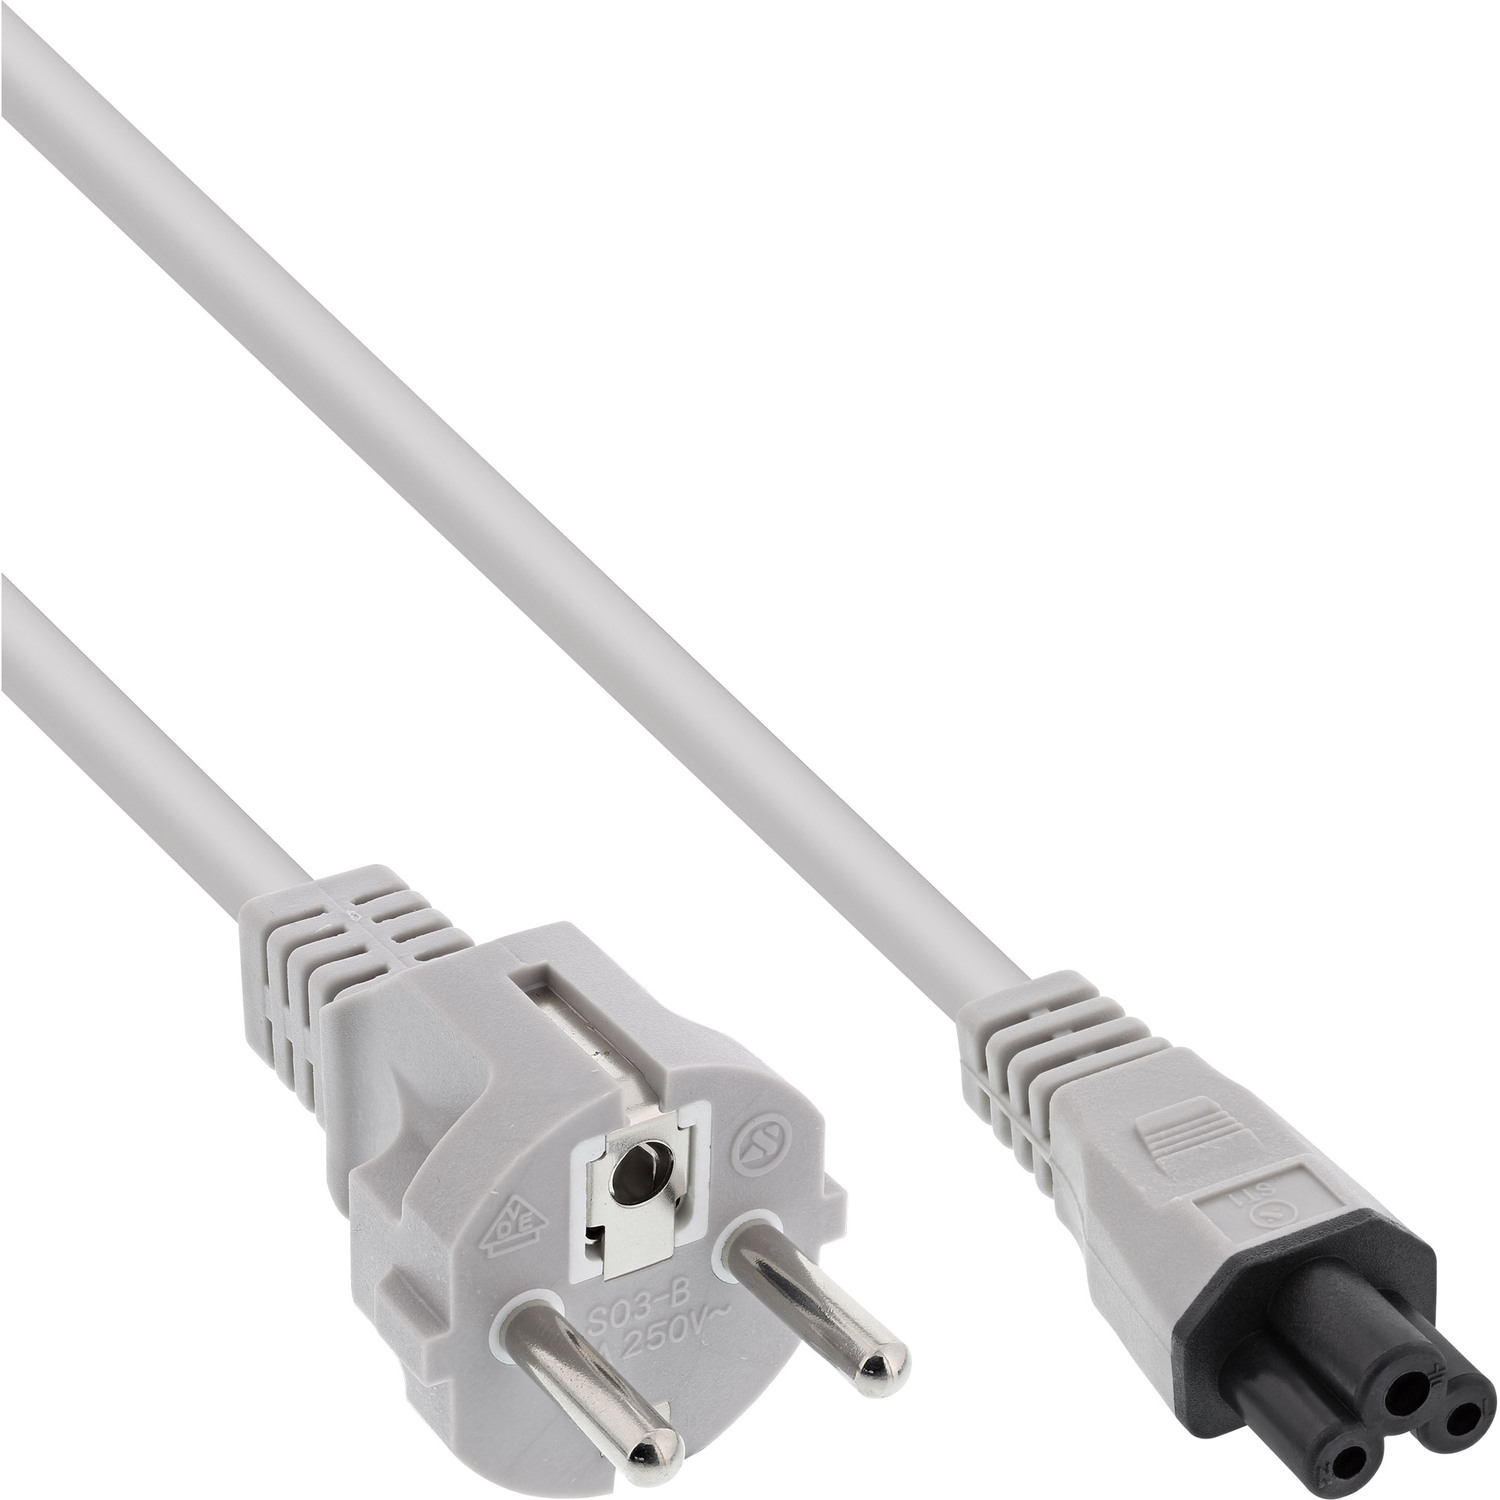 extern, Netzkabel m, 1,8m Kabel, INLINE Stromkabel für Notebook, Kupplung, InLine® grau grau, 3pol 1,8